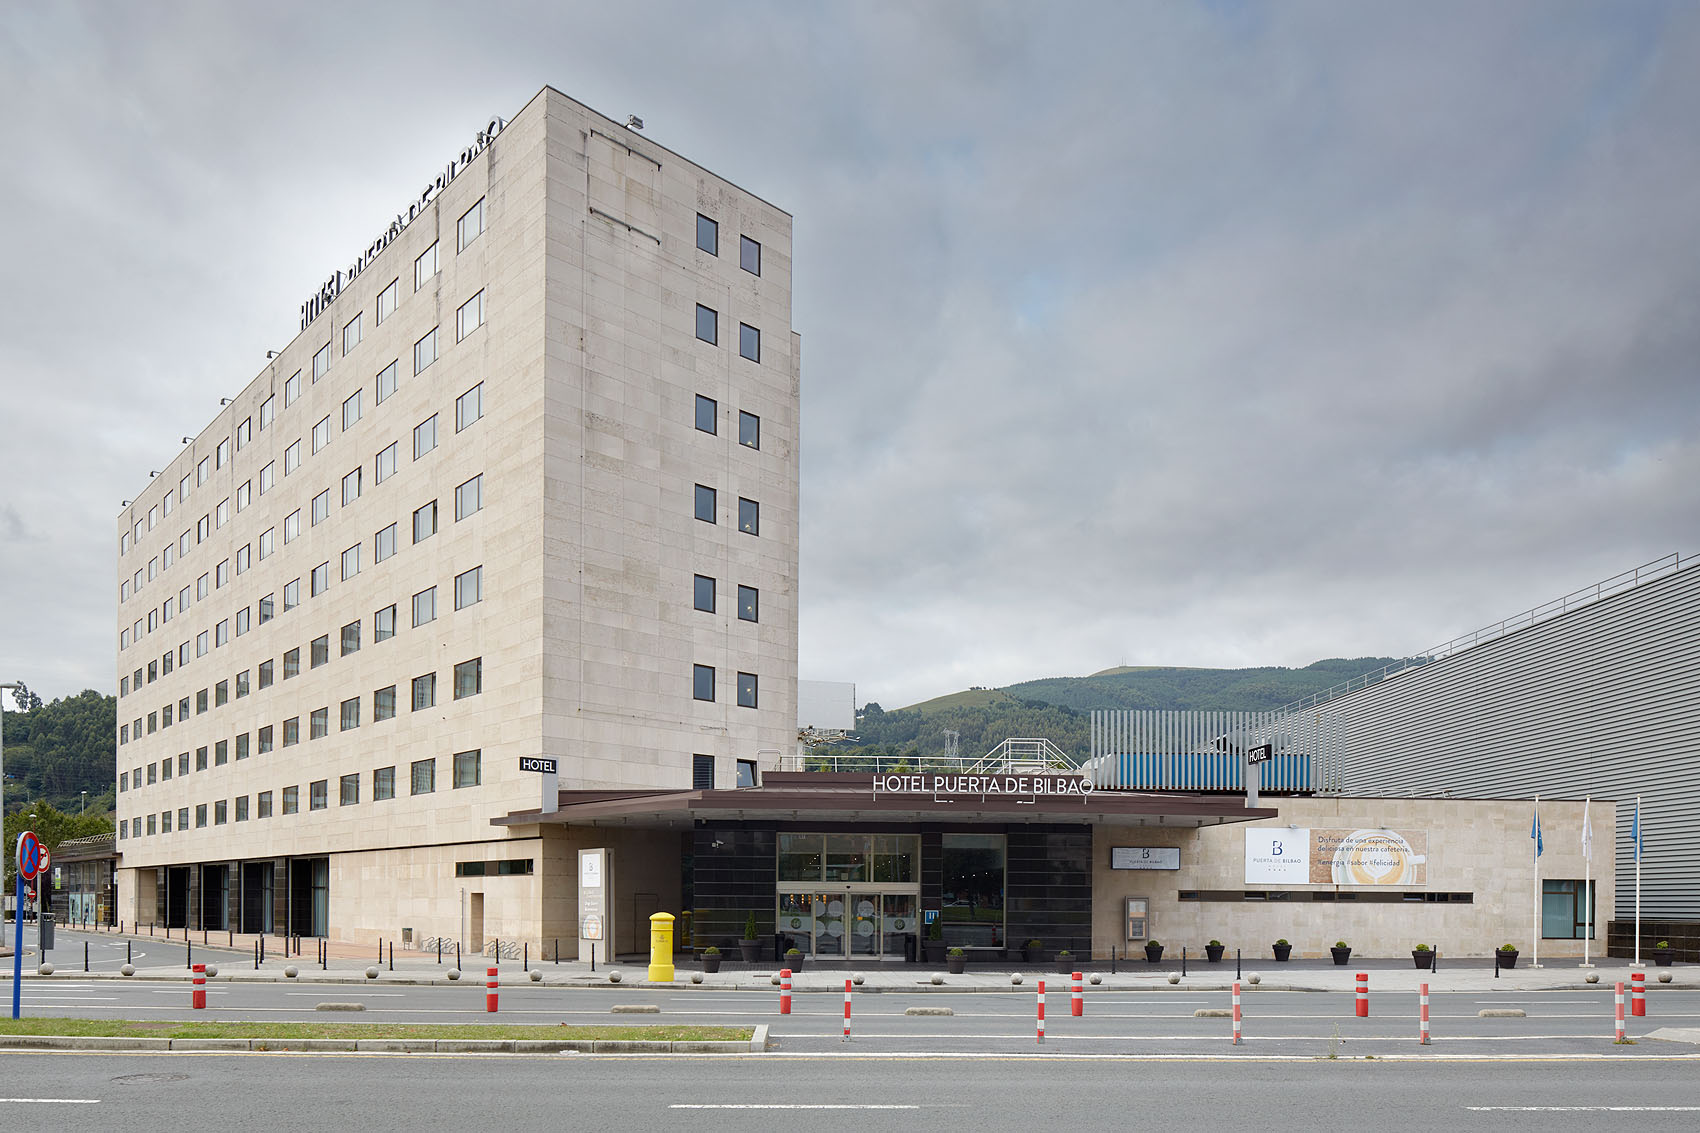 Hotel Puerta de Bilbao - Iñaki Caperochipi - Fotografía